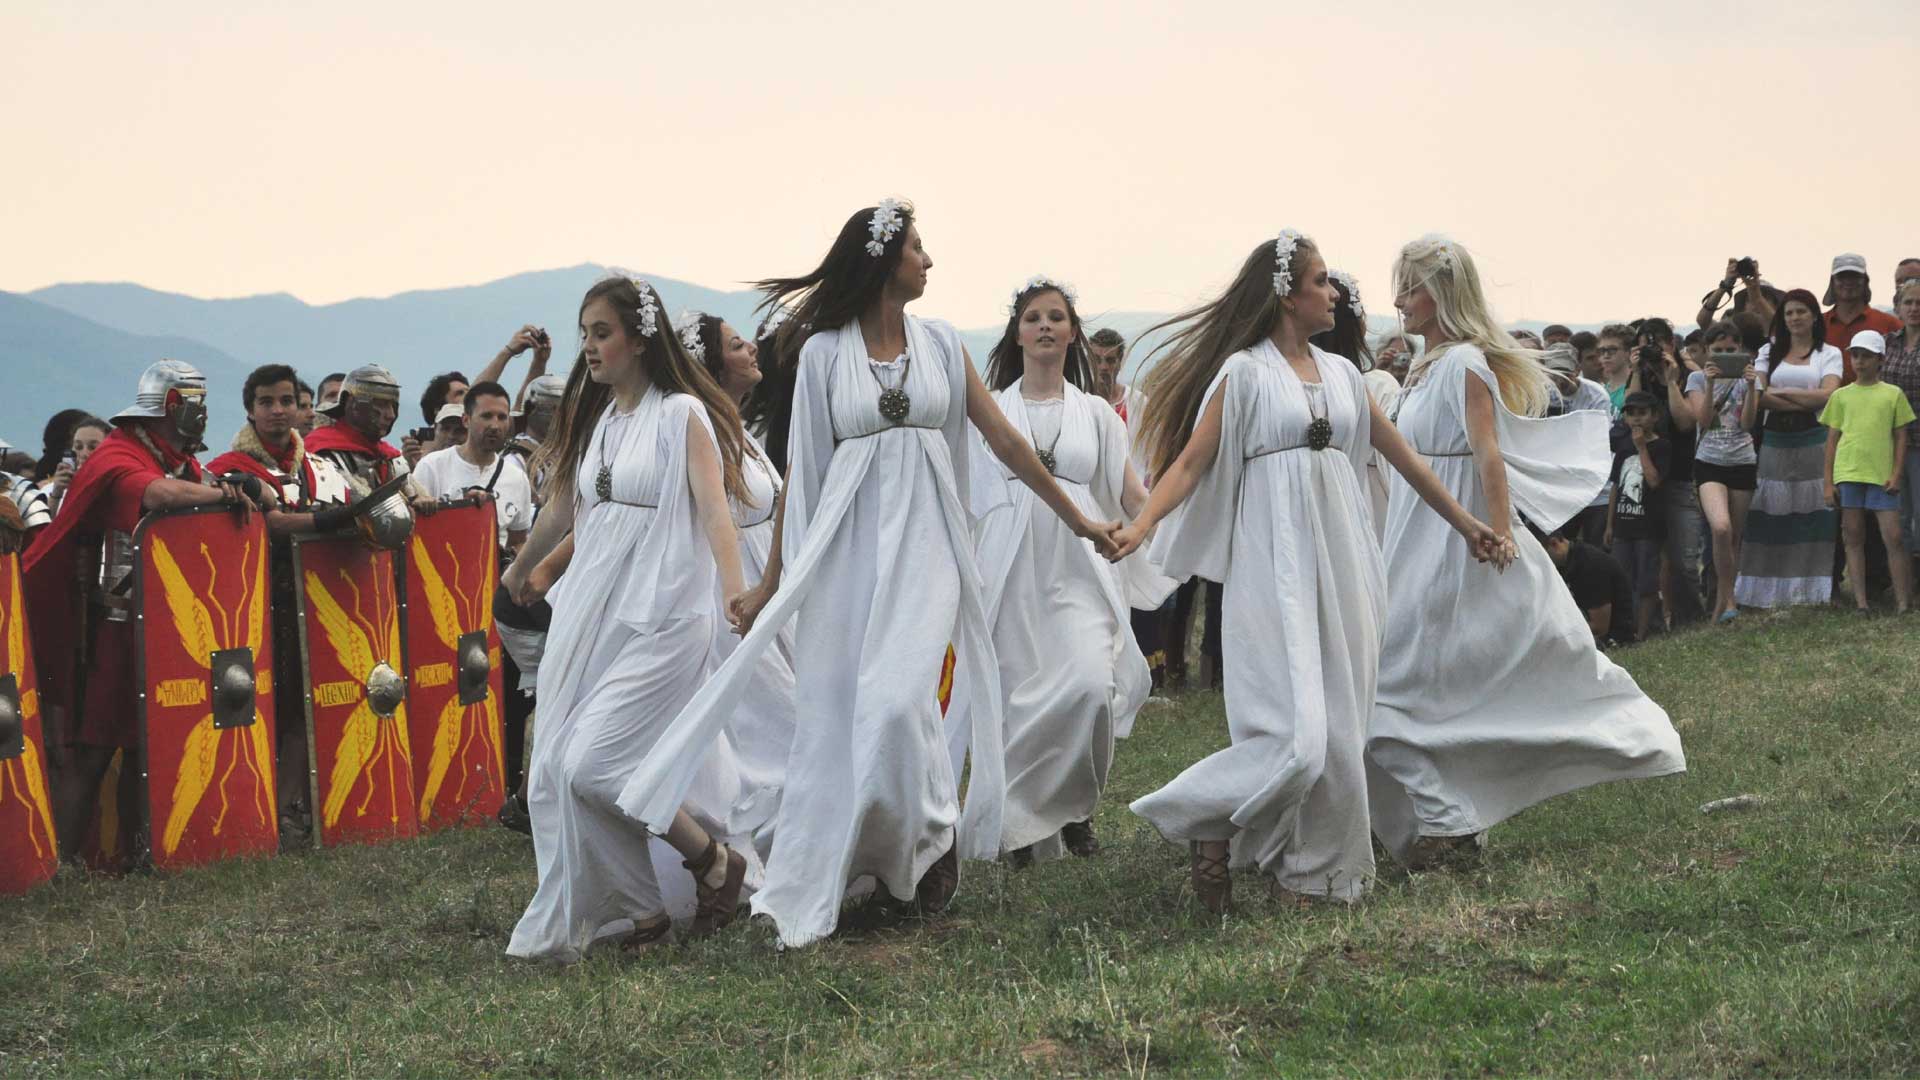 Festivalul Medieval Sighisoara